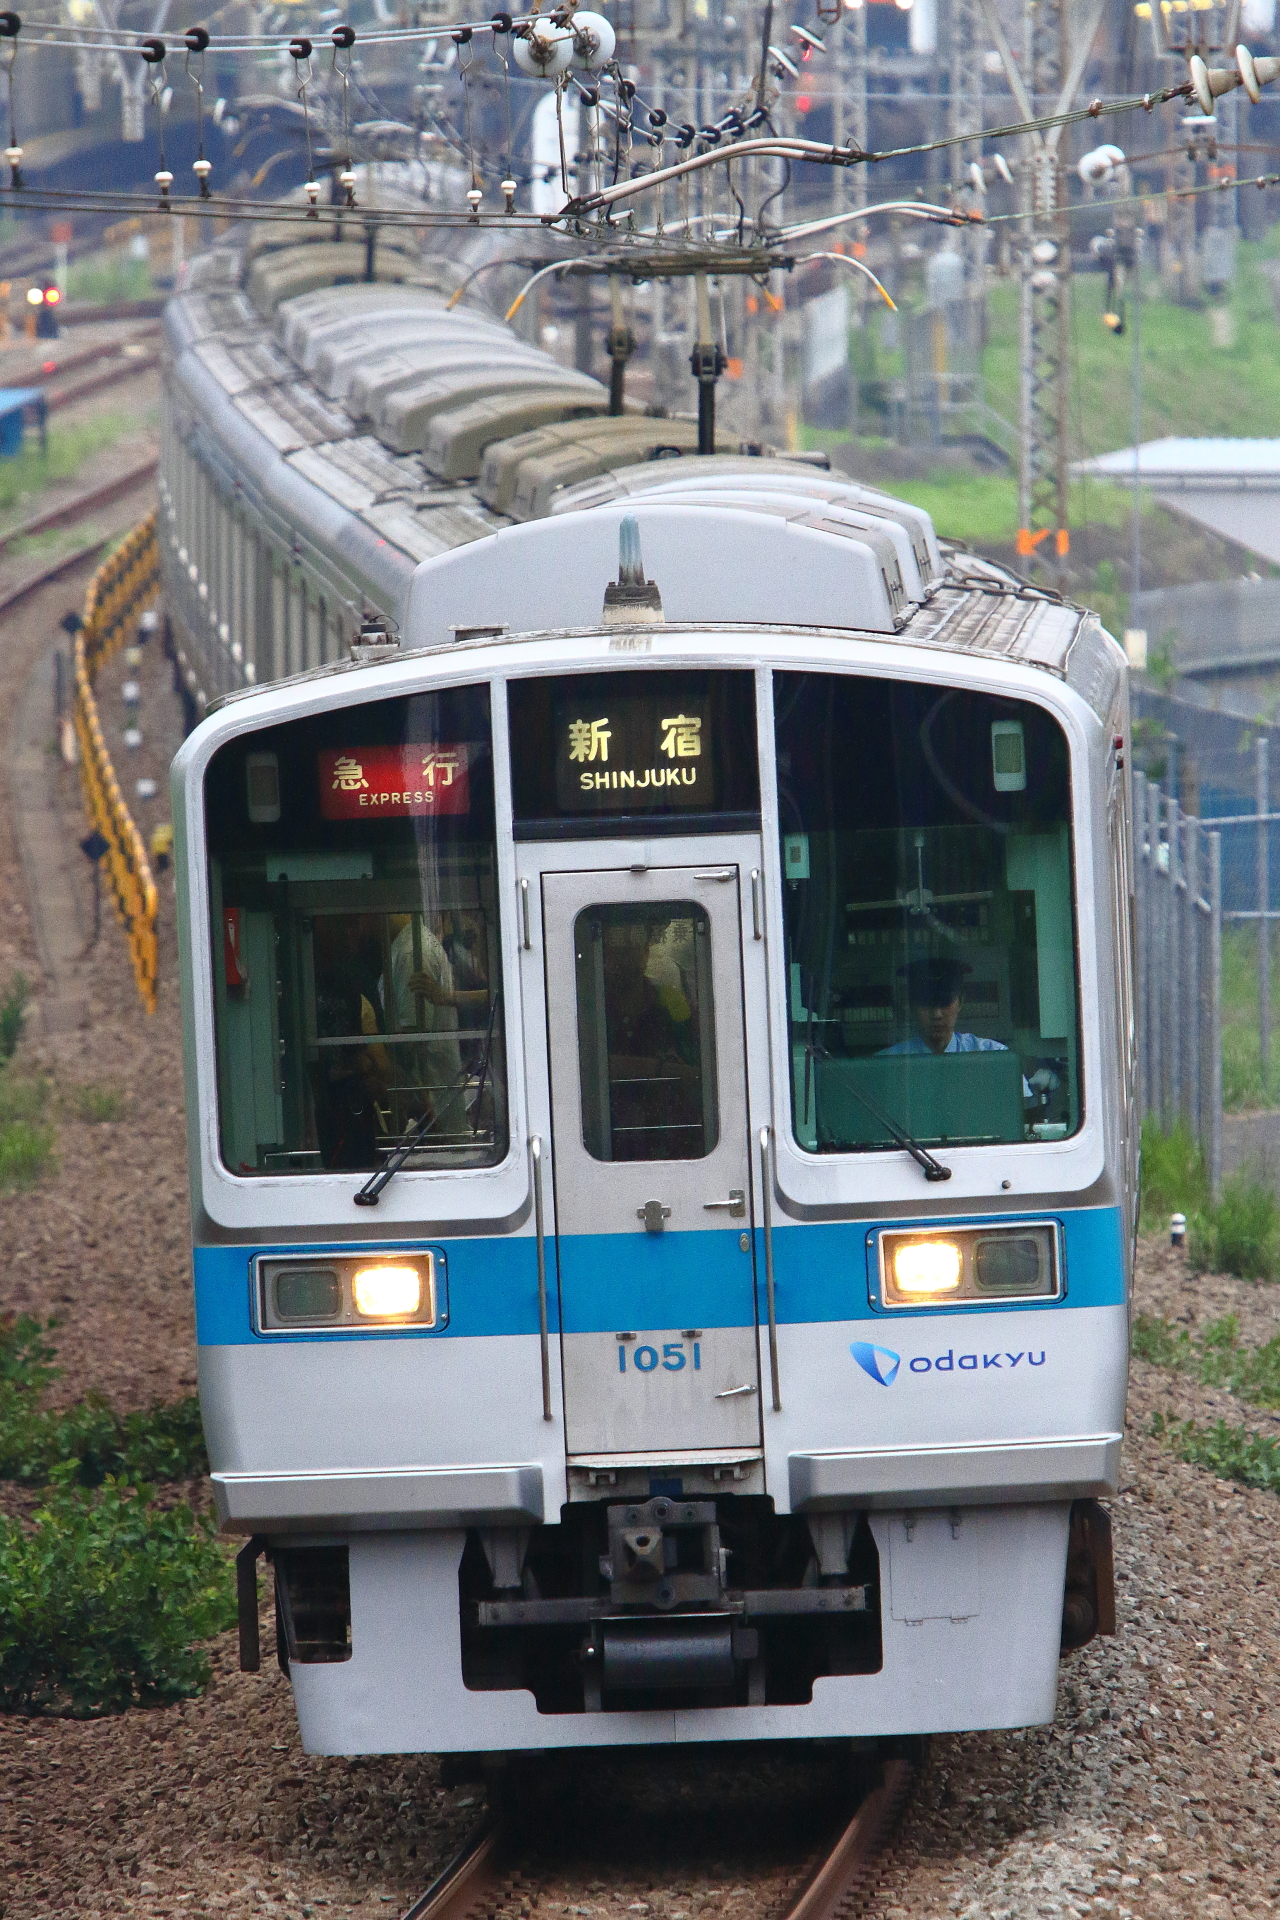 小田急で廃車となった通勤型車両はなぜ他社に譲渡されないのか Odapedia 小田急を中心とした鉄道に関するブログメディア